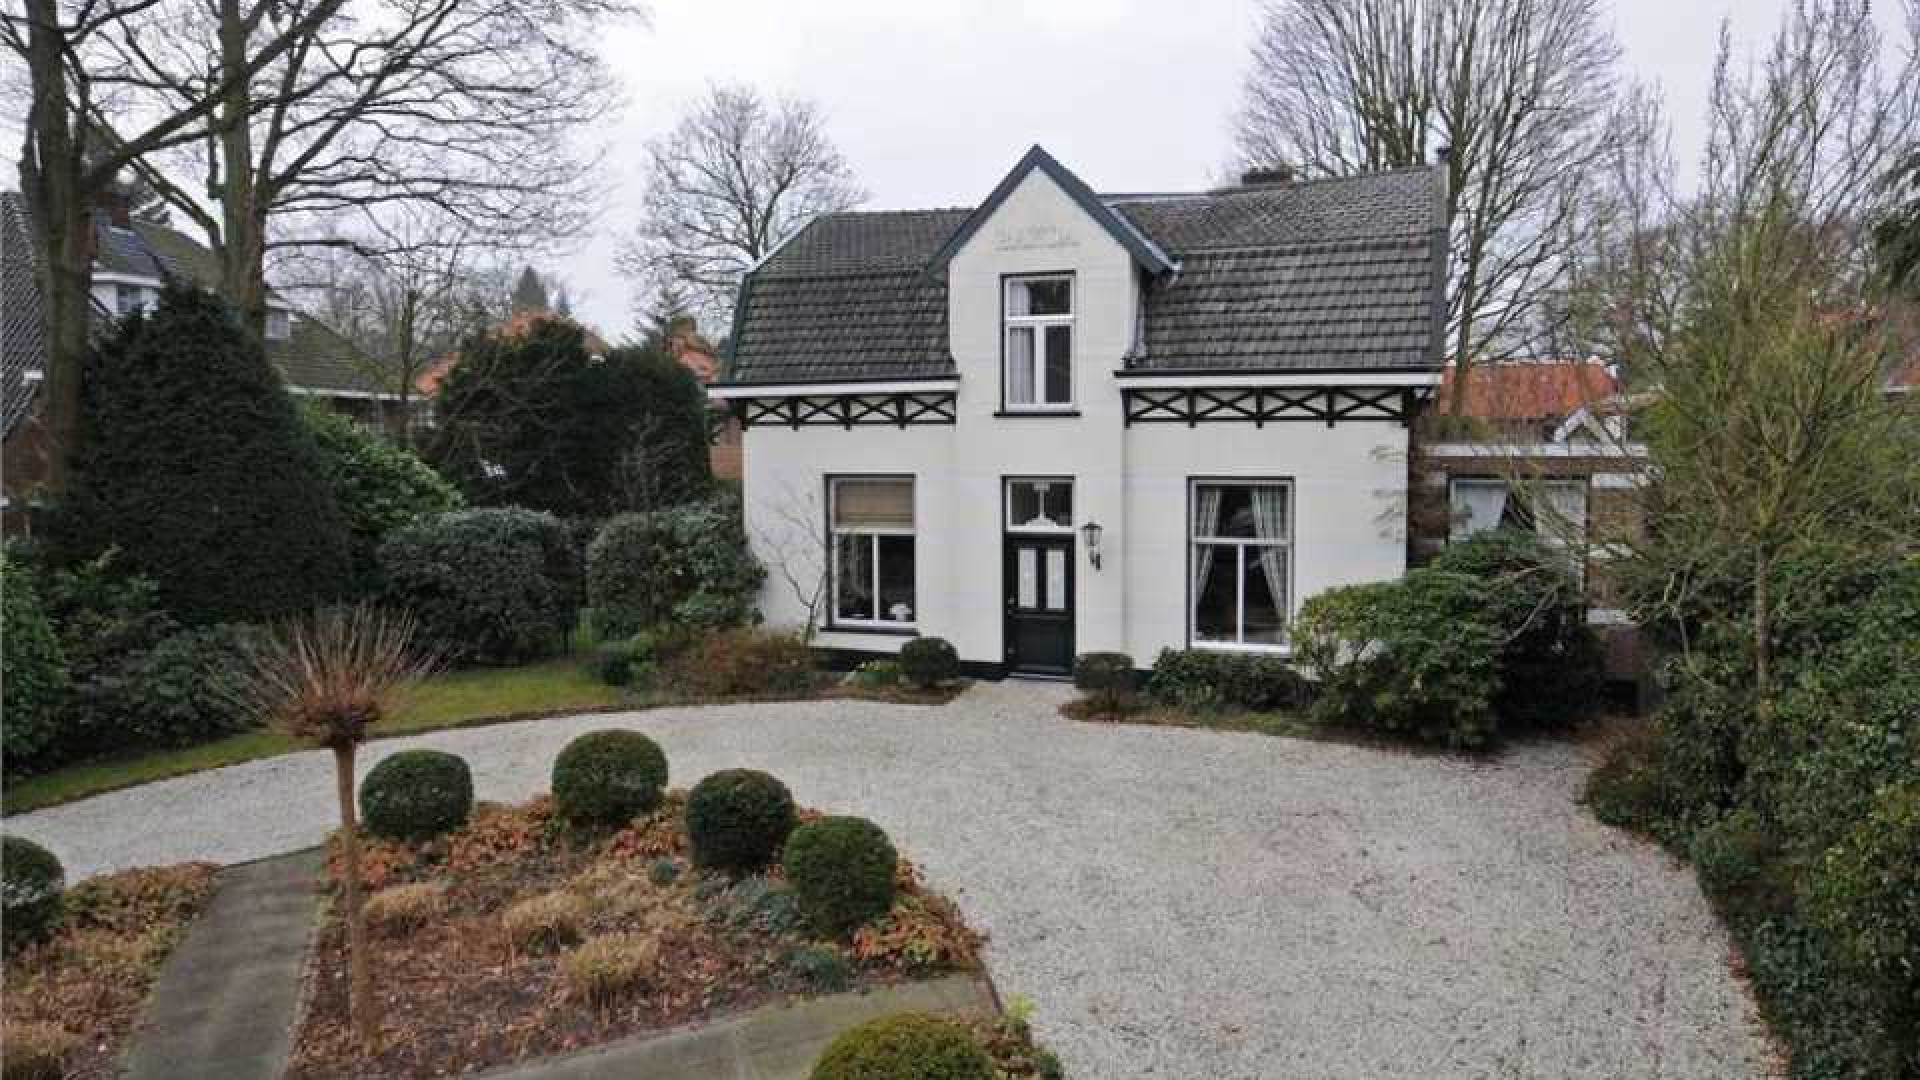 Frits Sissing scoort vette winst op verkoop van zijn oude huis. Zie foto's 16